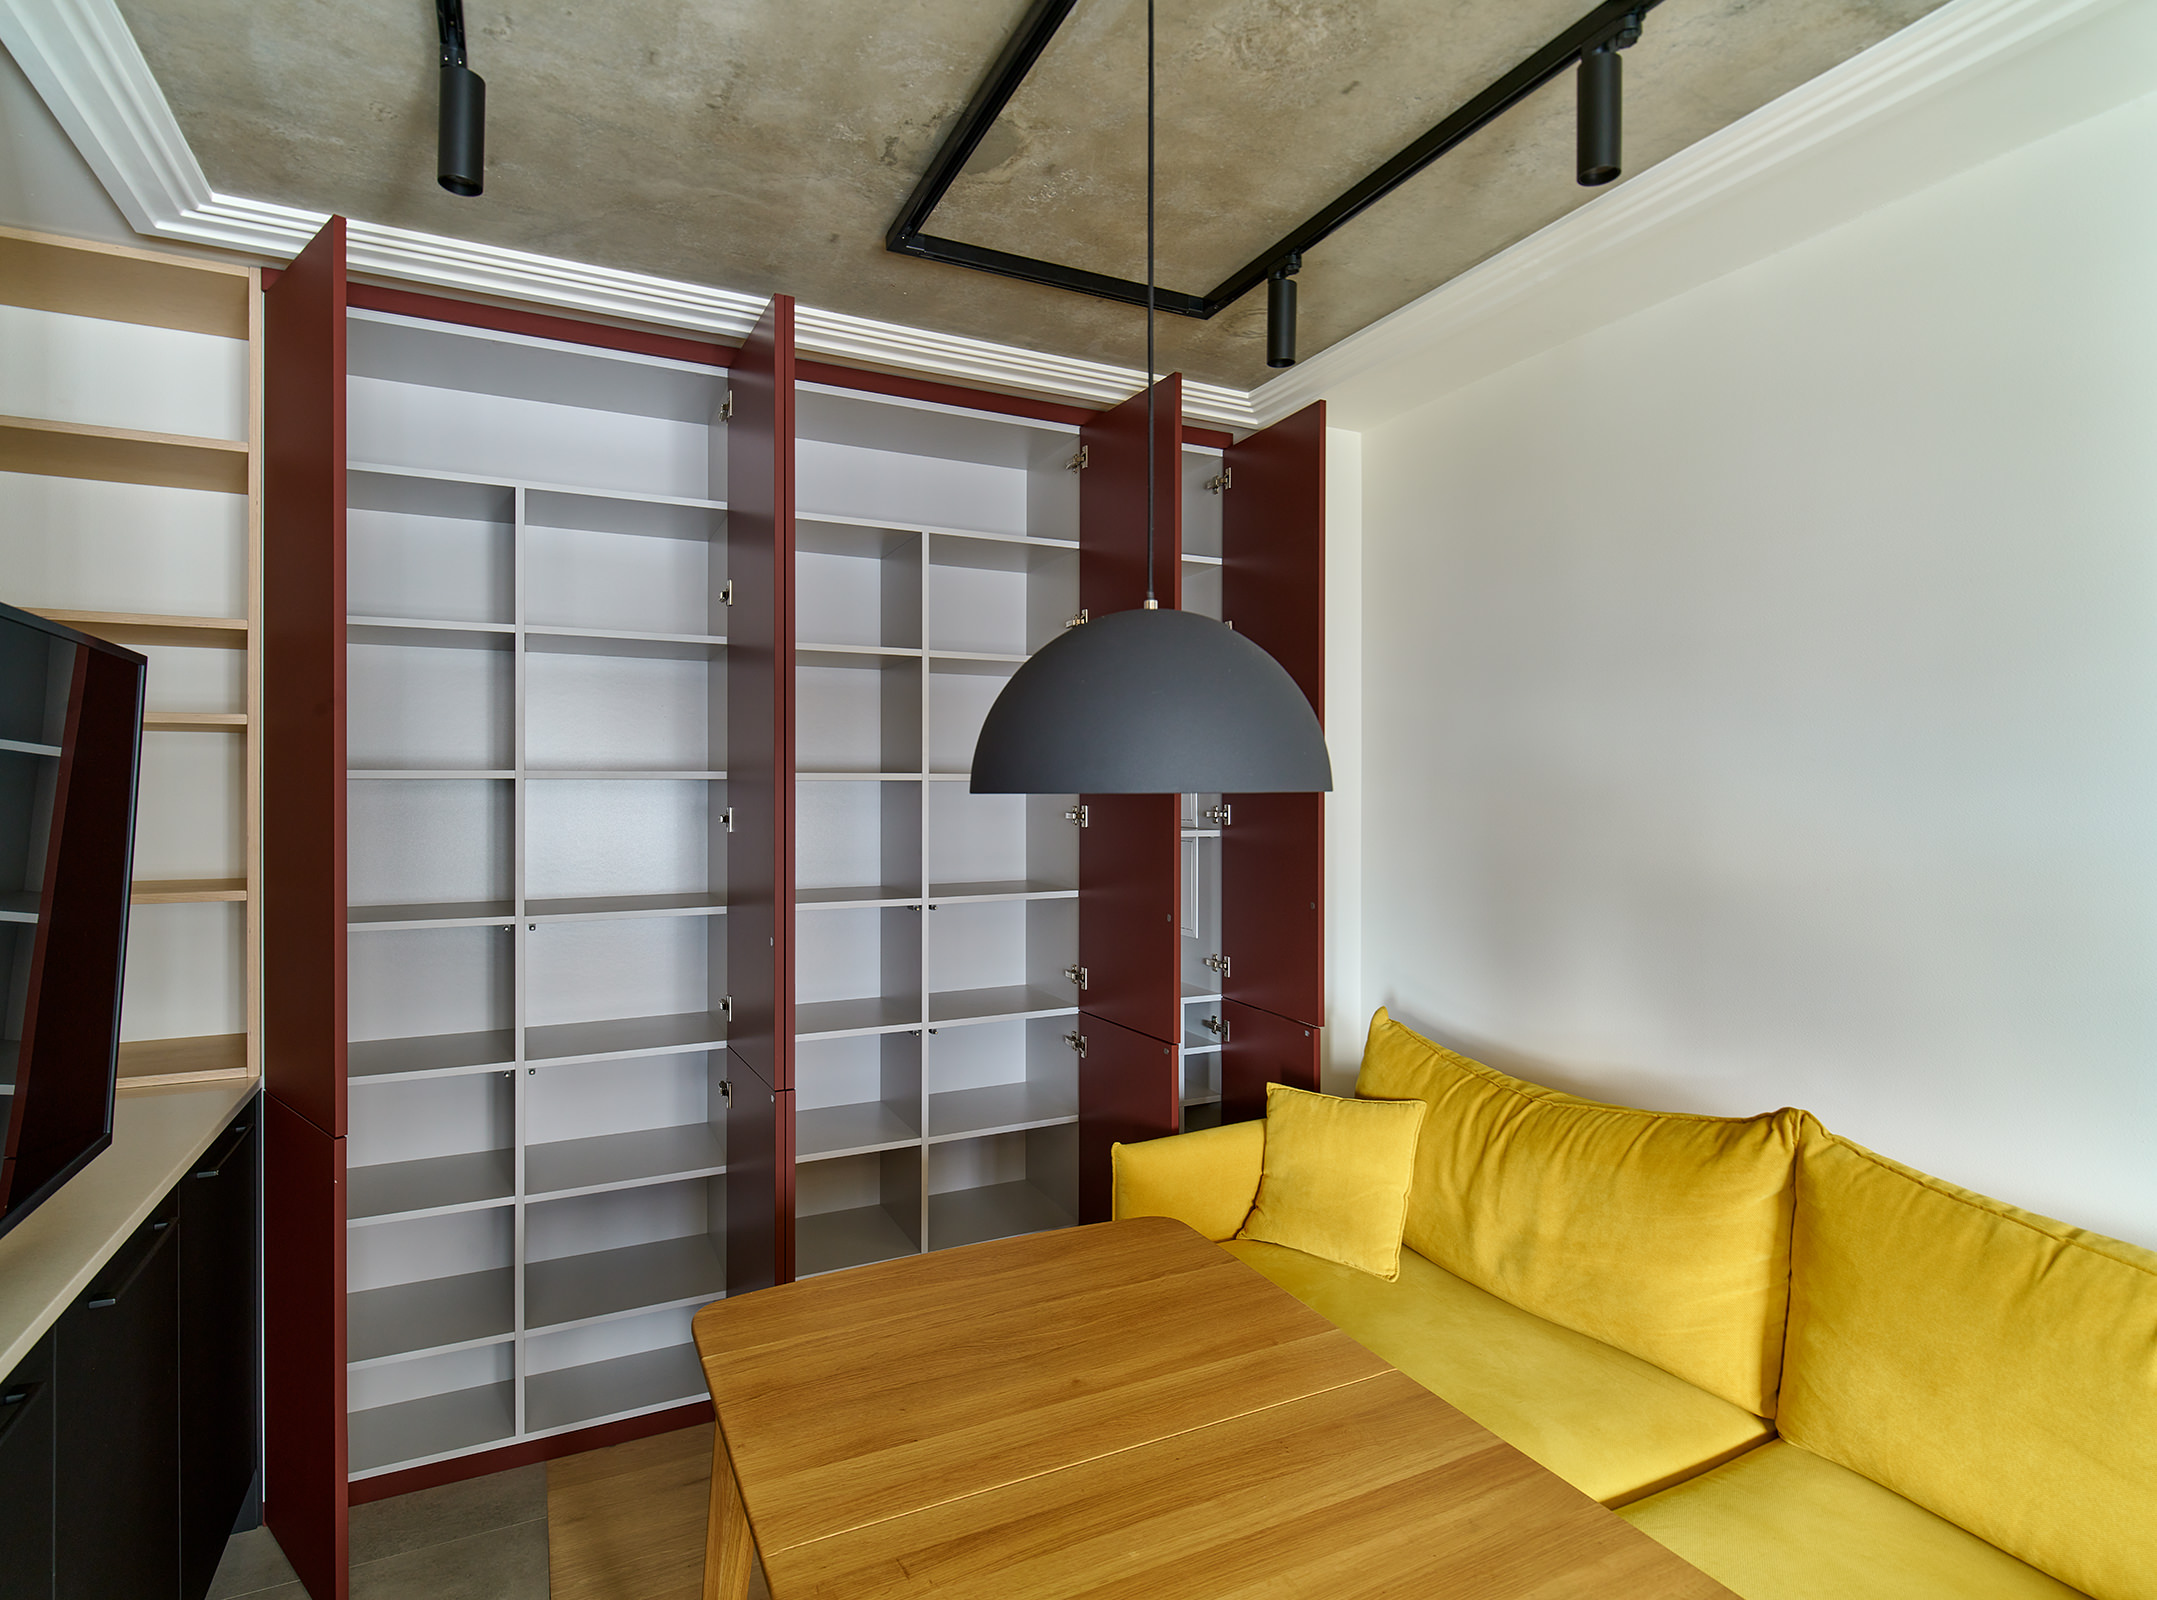 Фотография мебели и встроенного кухонного шкафа красно-бордового цвета с полками рядом с диваном горчично-желтого цвета и обеденным столом в интерьере новой квартиры в современном стиле